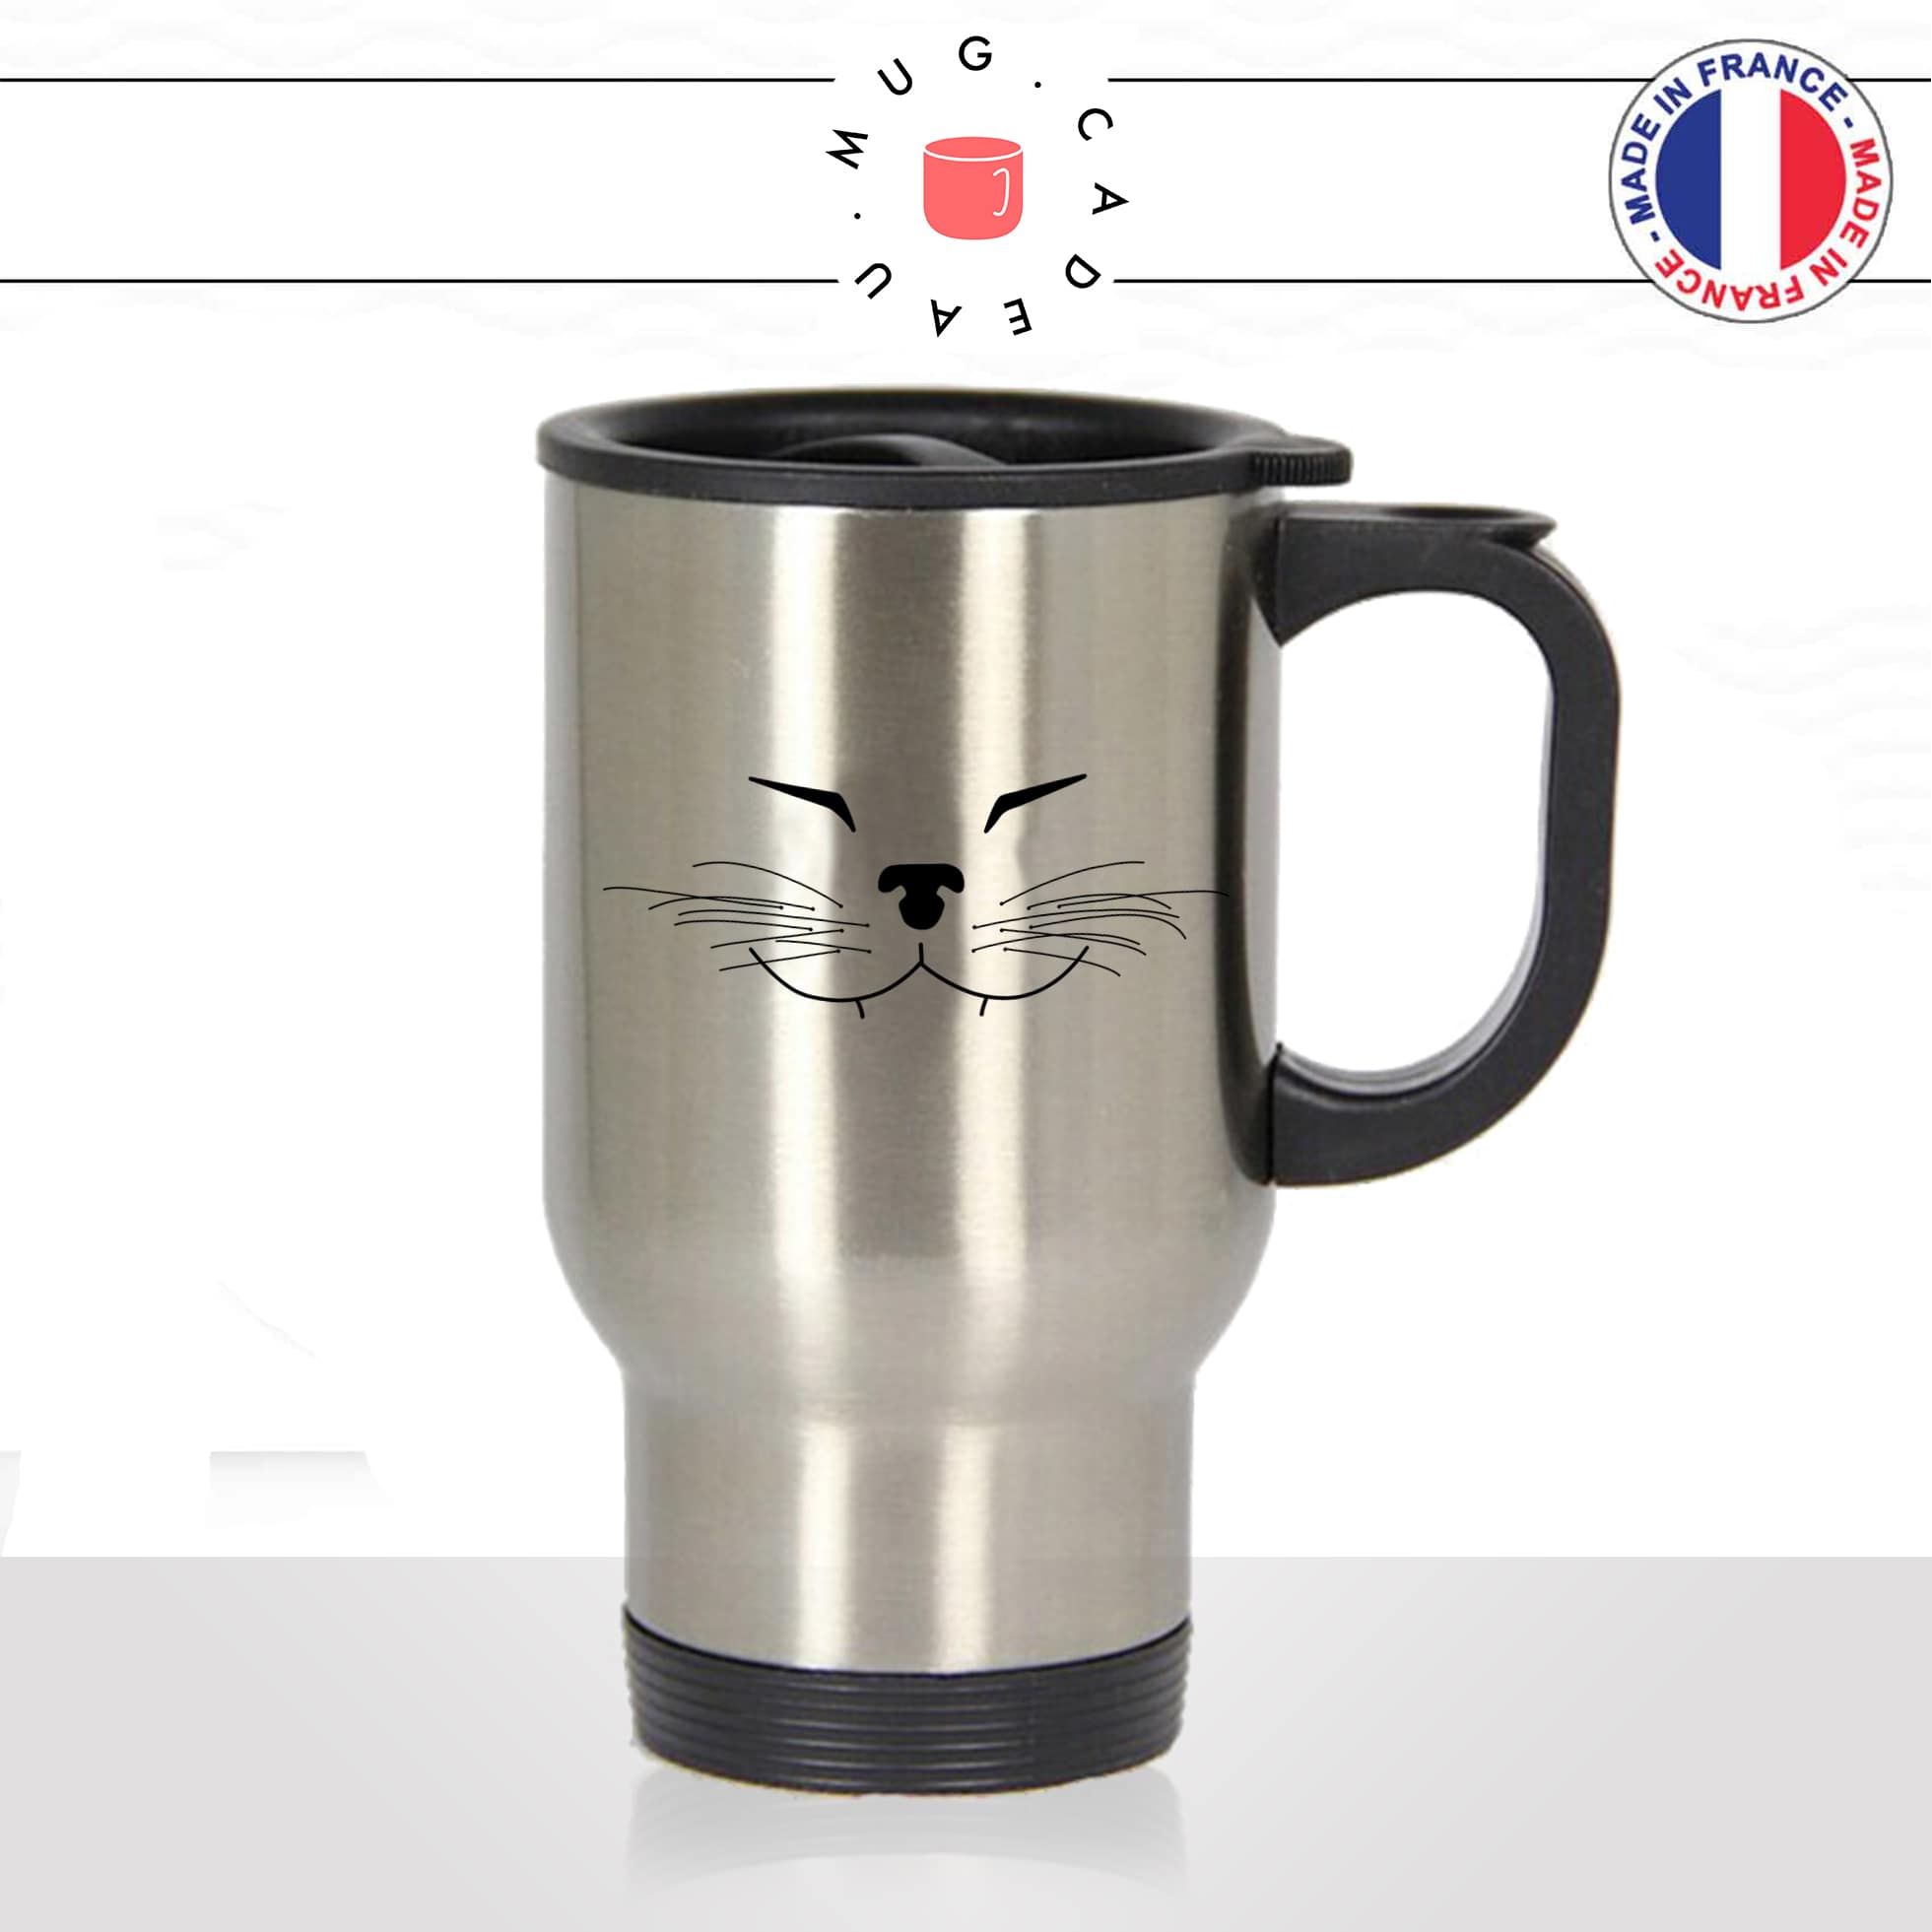 mug-tasse-thermos-de-voyage-café-thé-boisson-animal-animaux-chat-frimousse-moustache-mignon-chaton-drole-idée-cadeau-original-fun2-min